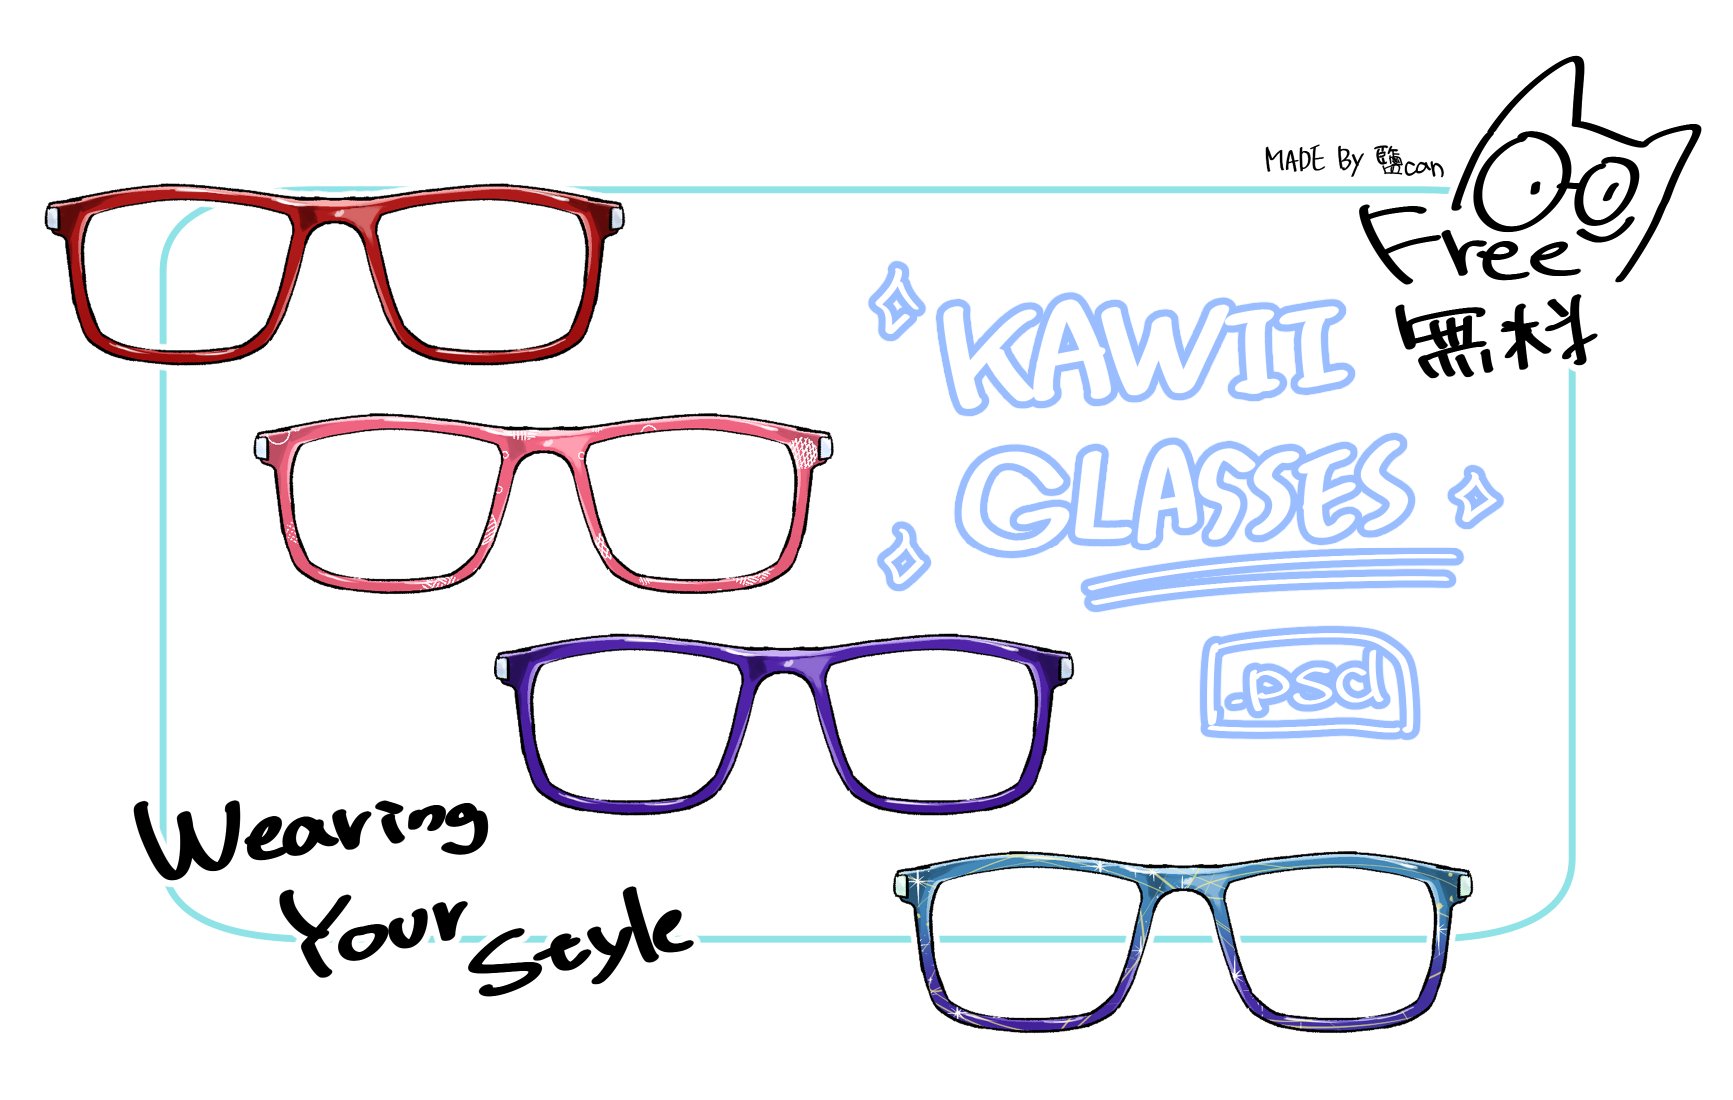 鹽can Kawaii Glasses Make Your Own Special Glasses Free Dowenload For 60 Days 試著做了卡哇伊眼鏡的模板 戴上自己的風格吧 60日免費下載 可愛いメガネを作りましょう 60日フリーダウンロード T Co Vfsmwrgpri フリー素材